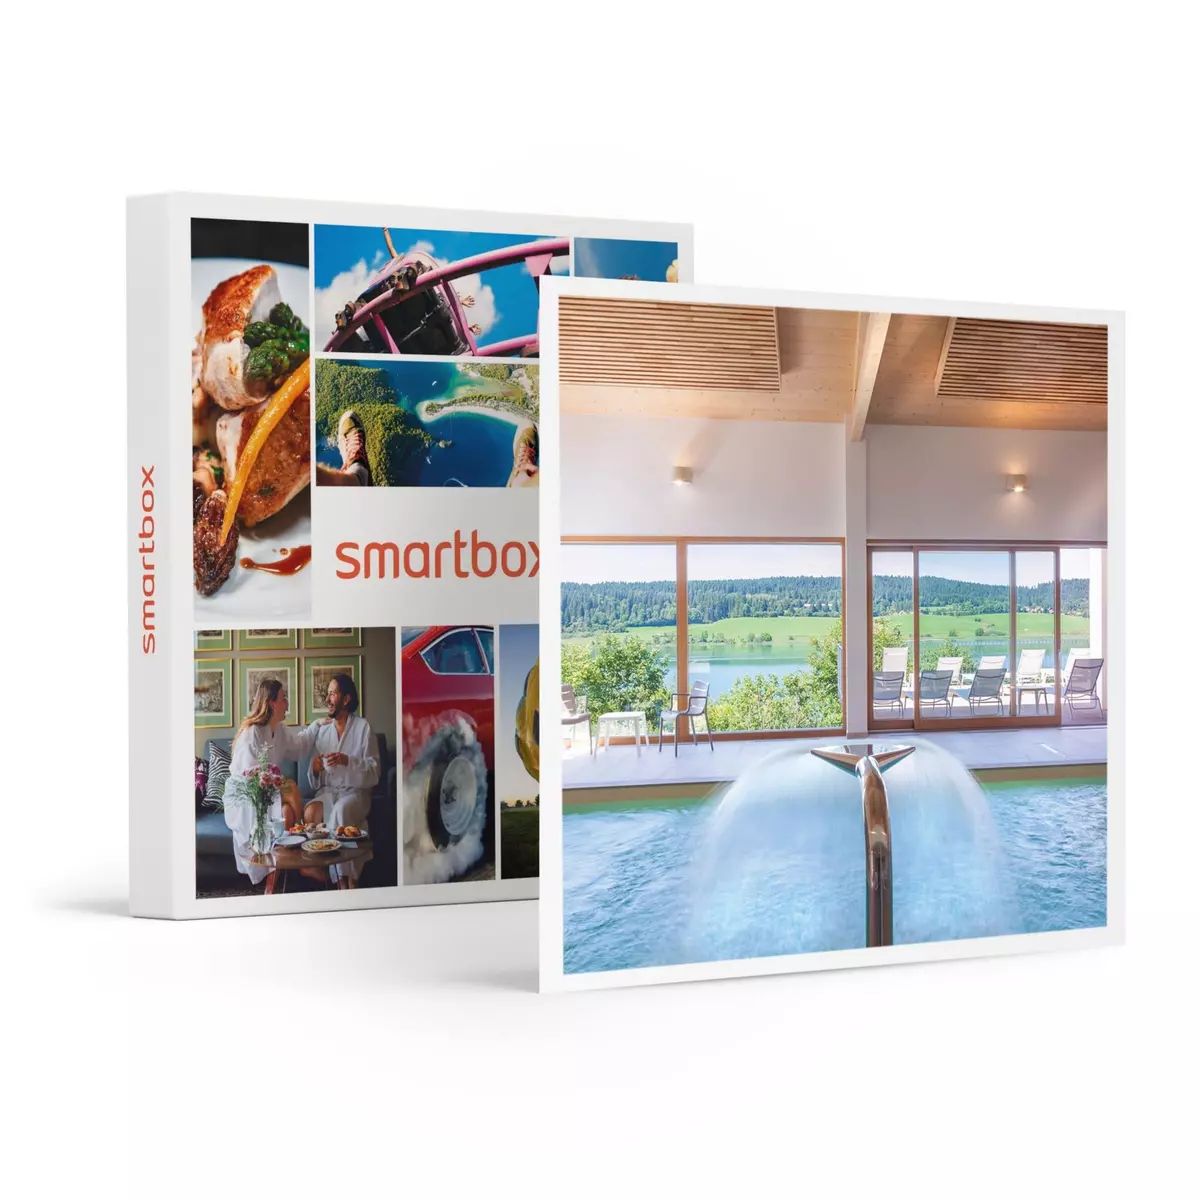 Smartbox Séjour en suite en famille avec accès au spa à Malbuisson - Coffret Cadeau Séjour